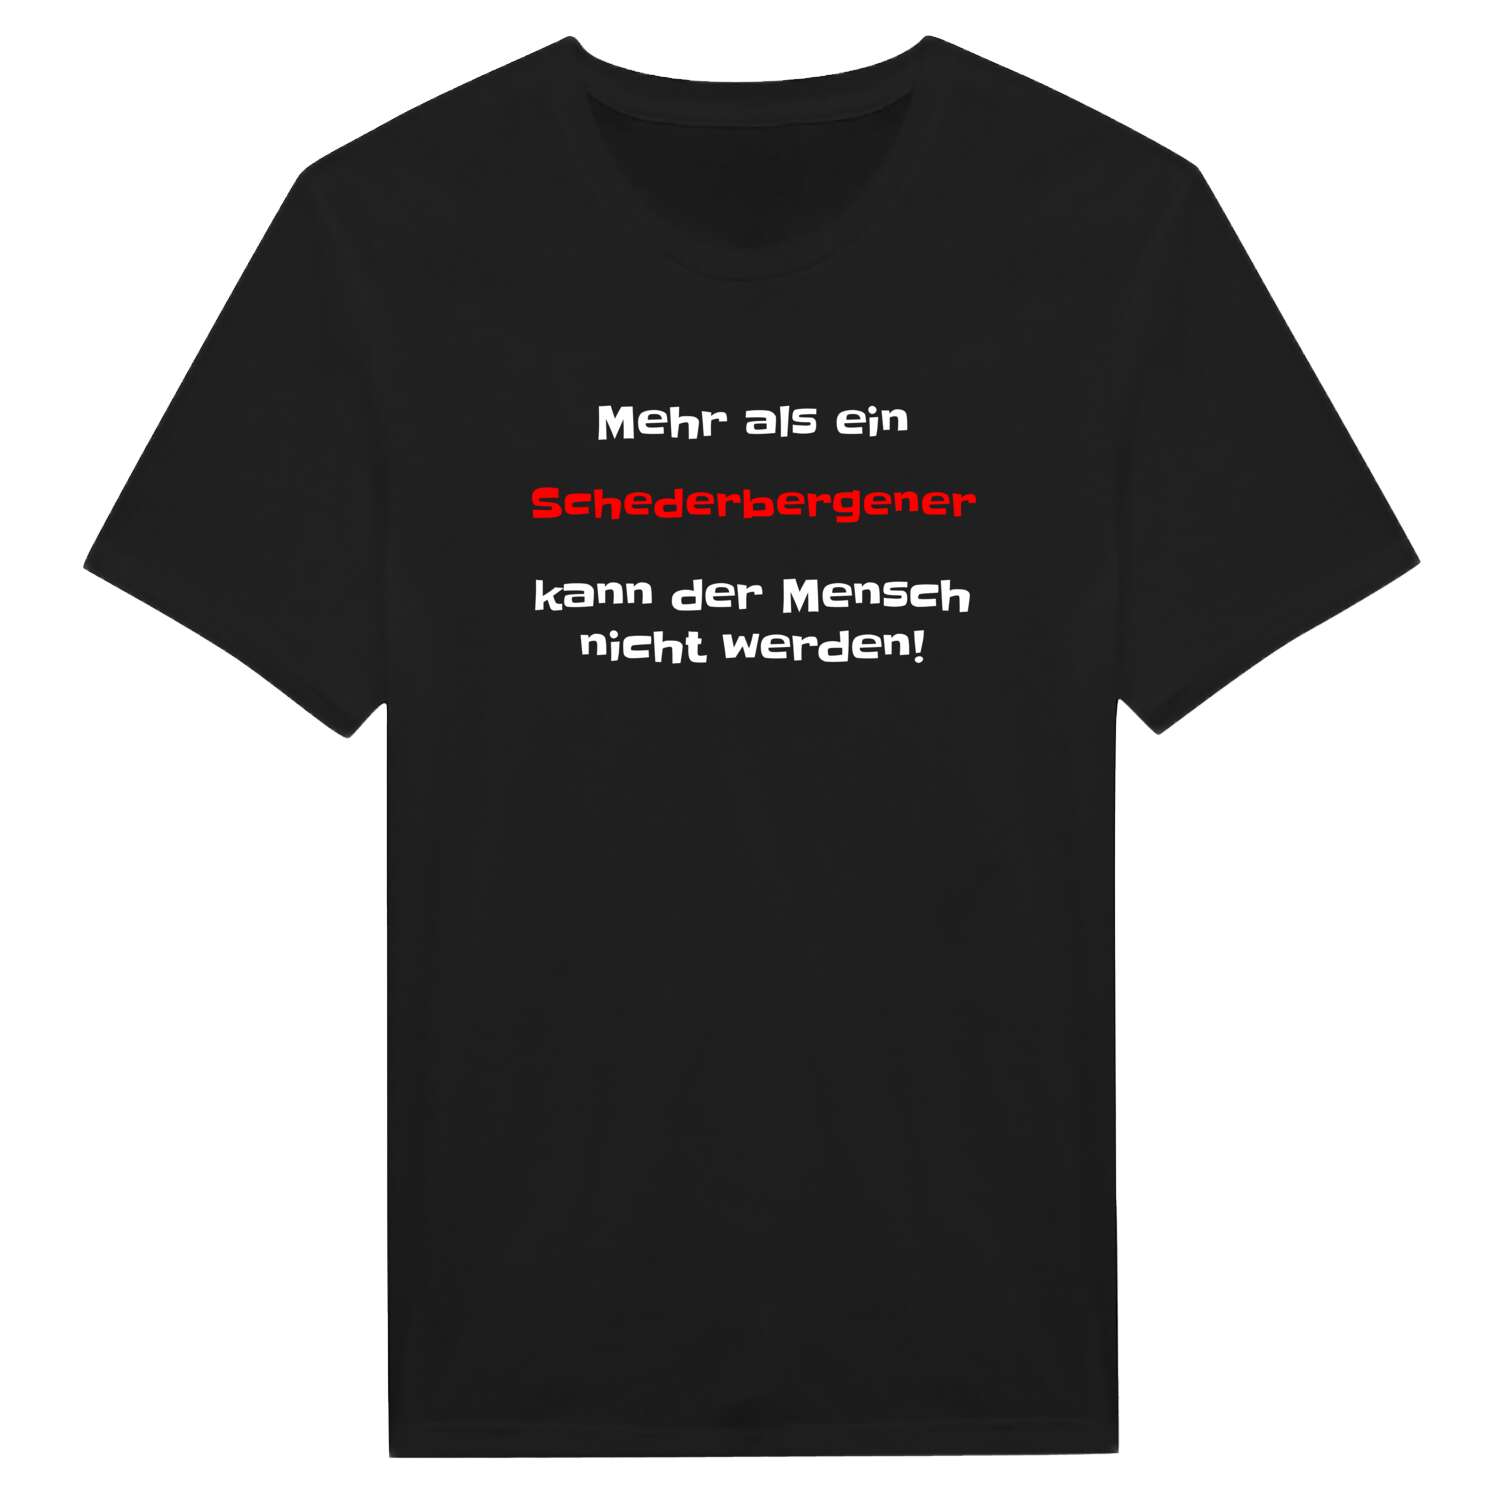 Schederberge T-Shirt »Mehr als ein«